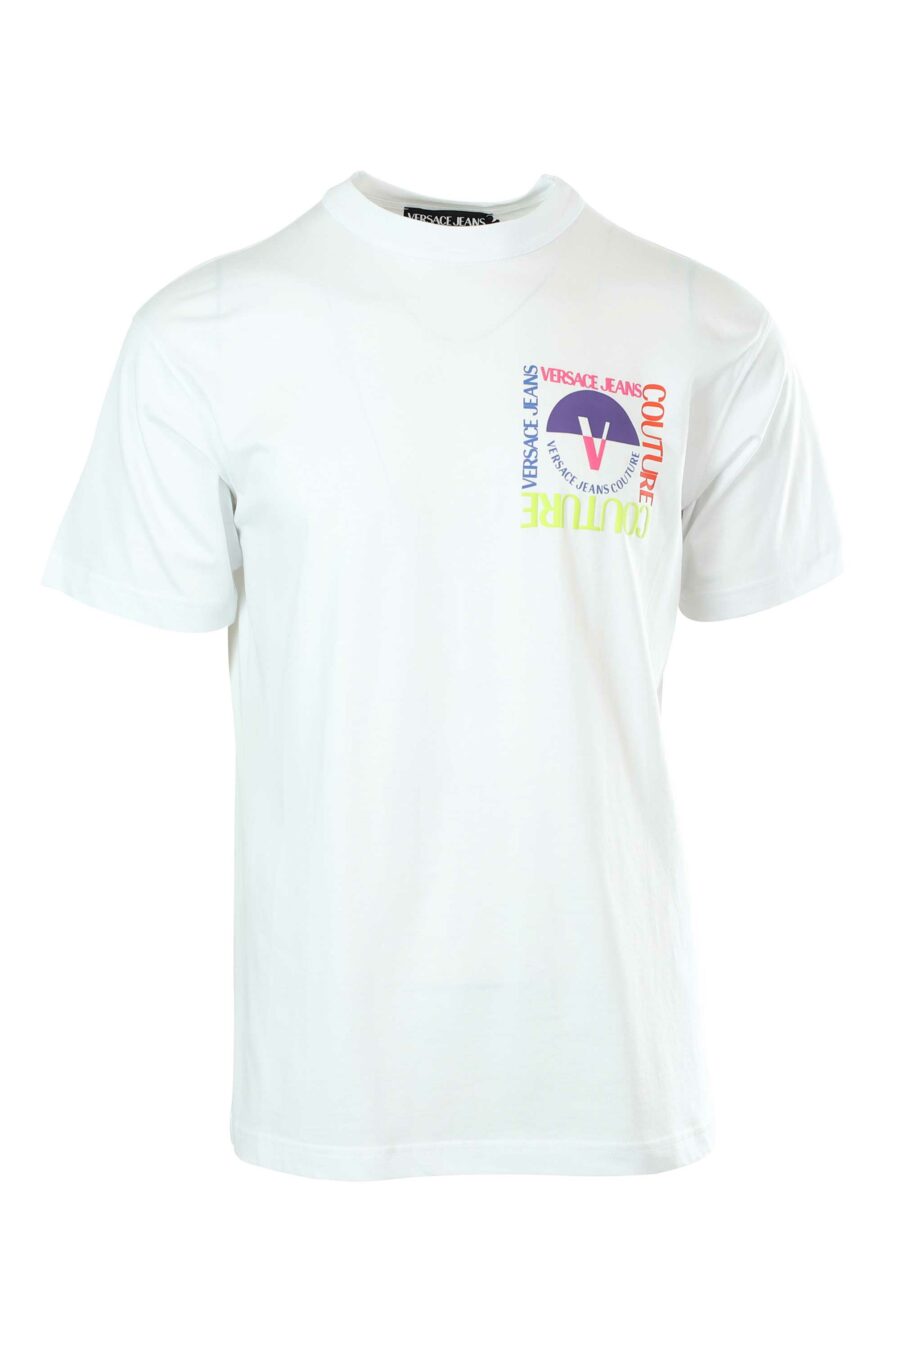 T-shirt blanc avec minilogue multicolore - 8052019235029